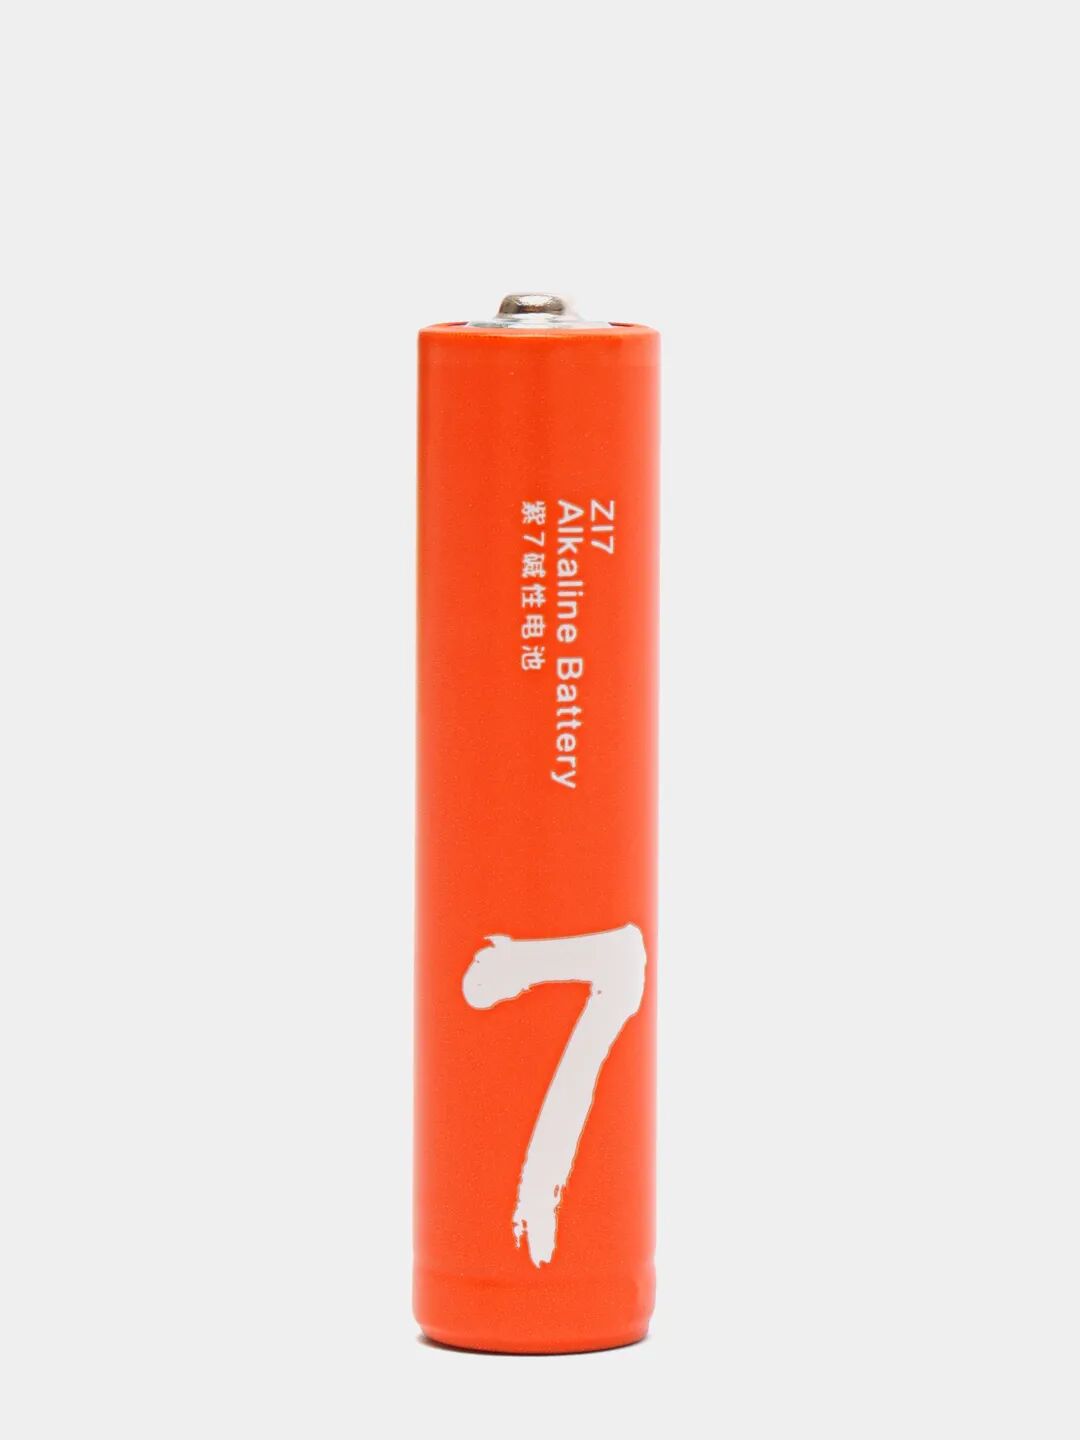 Батарейки алкалиновые ZMI Rainbow Zi7 типа AAA (уп. 4 шт) (Orange) - 4